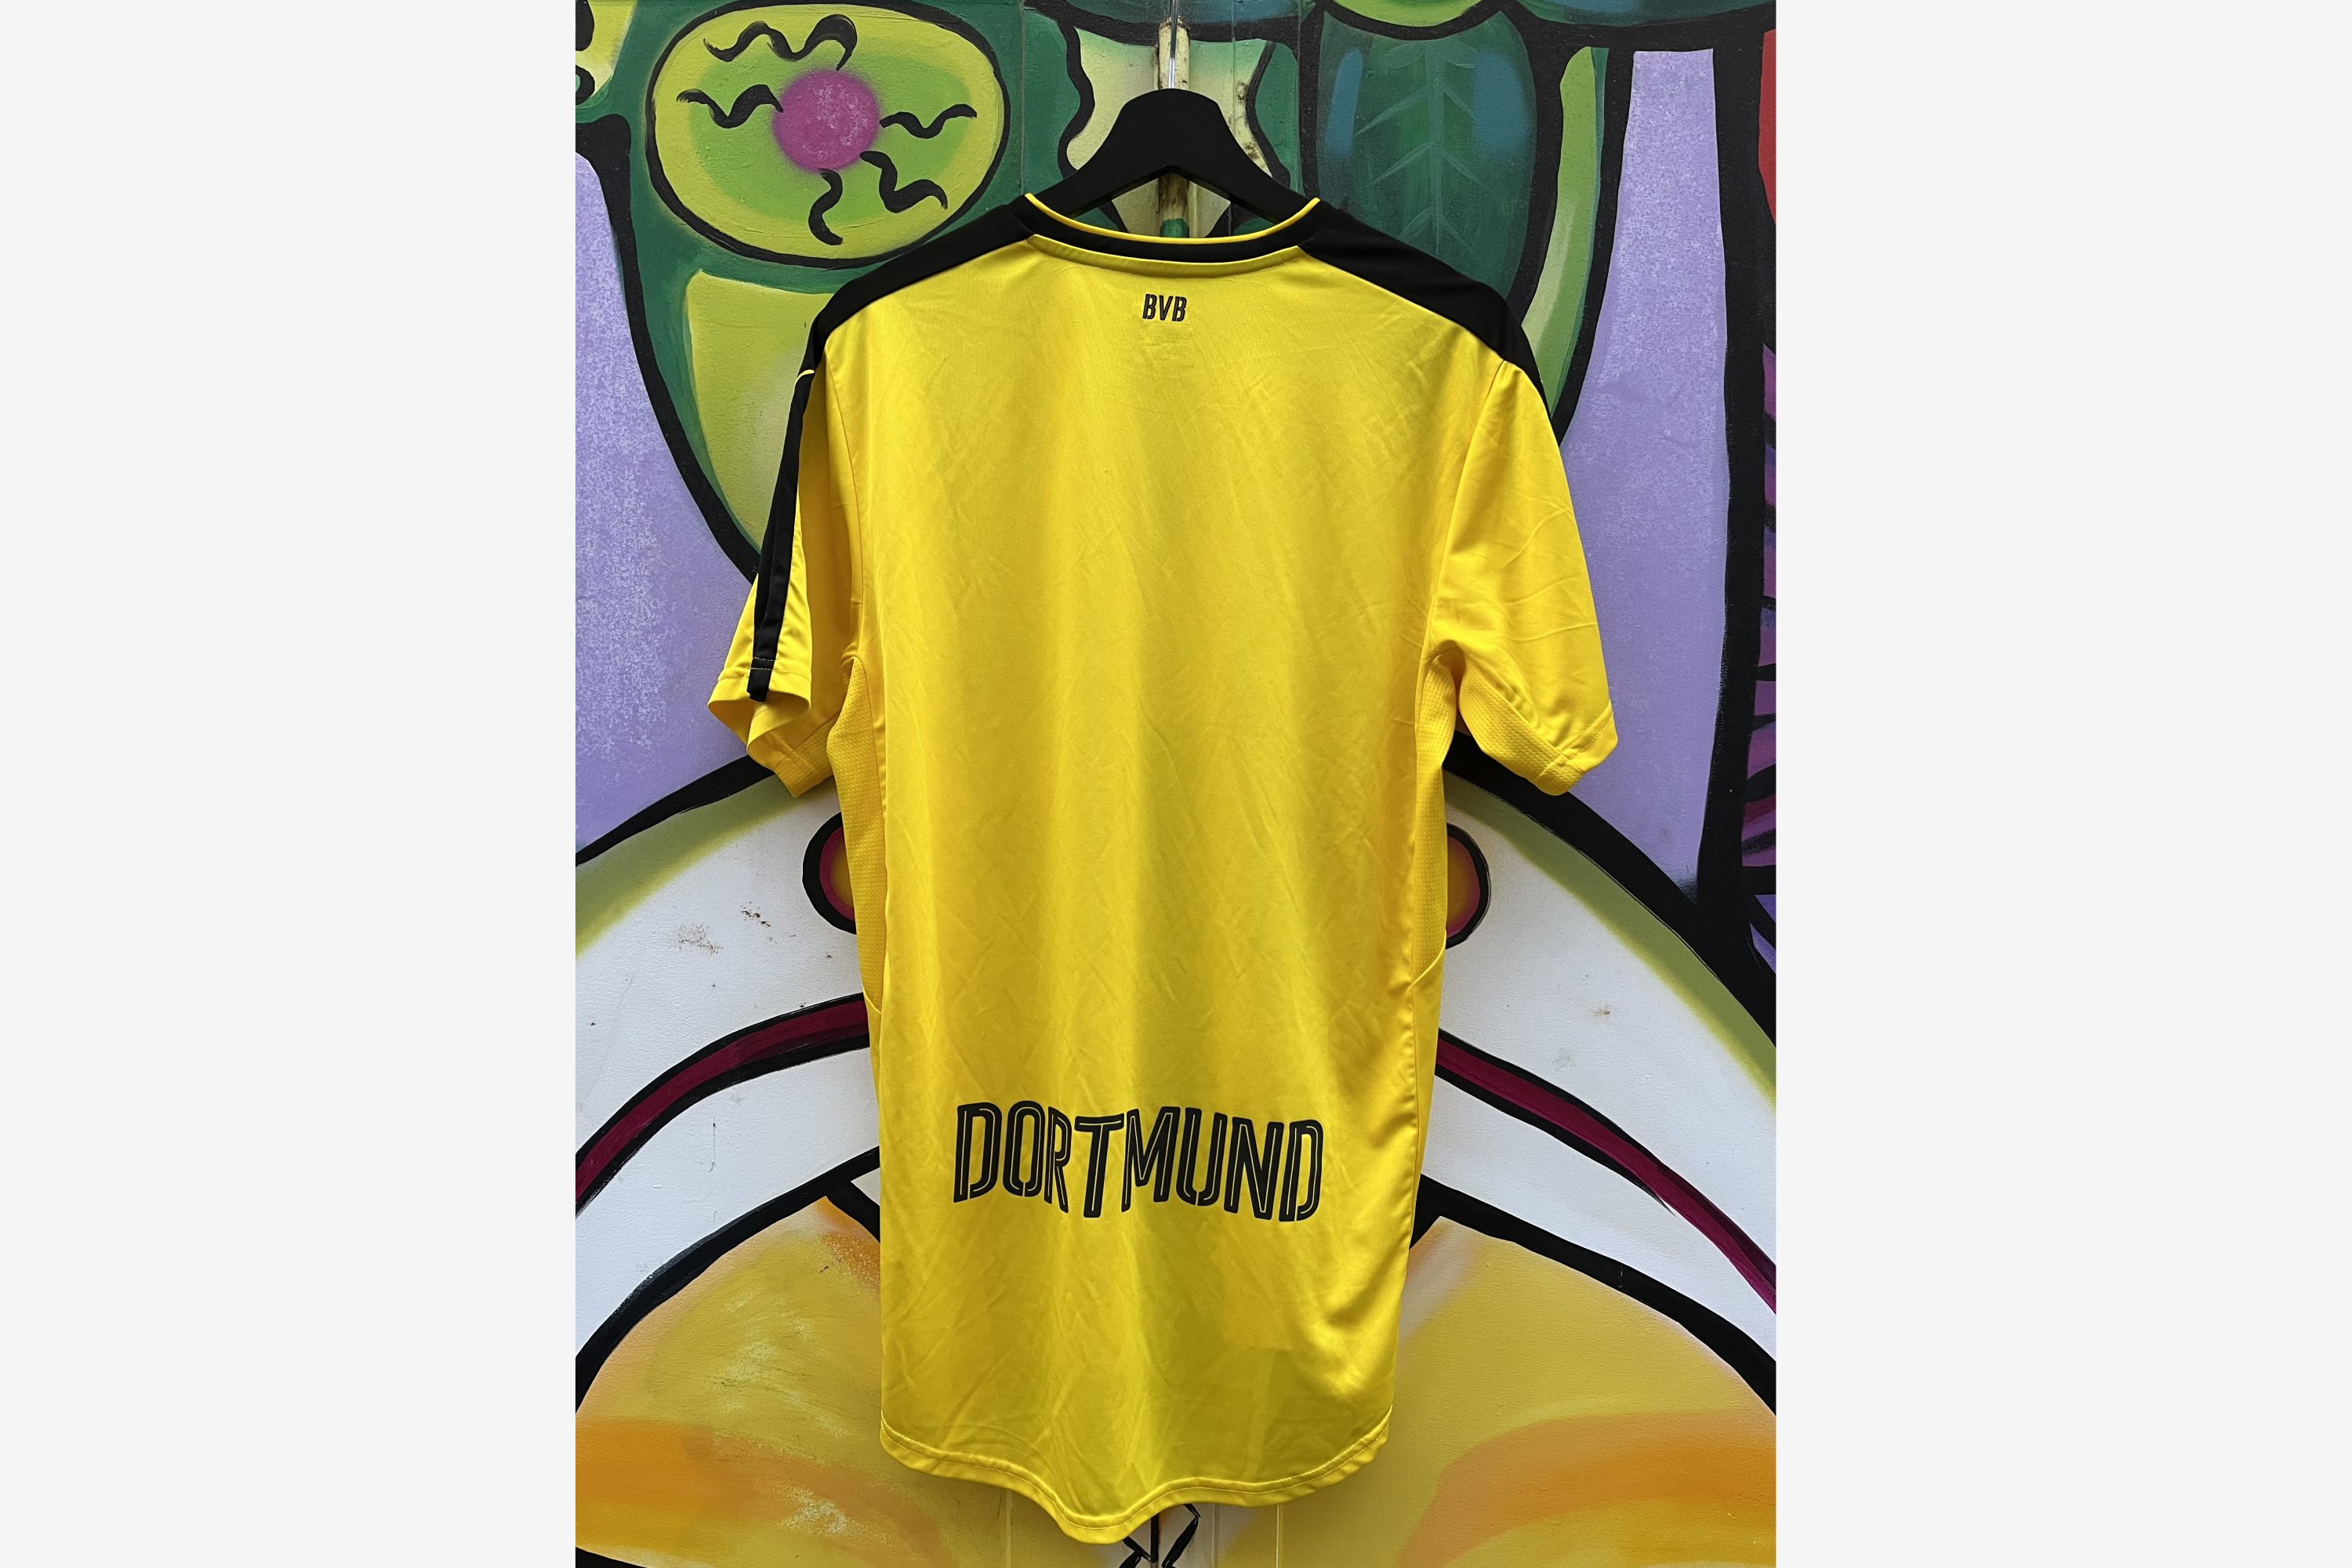 Puma - Borussia Dortmund 2016/17 Home Football Shirt